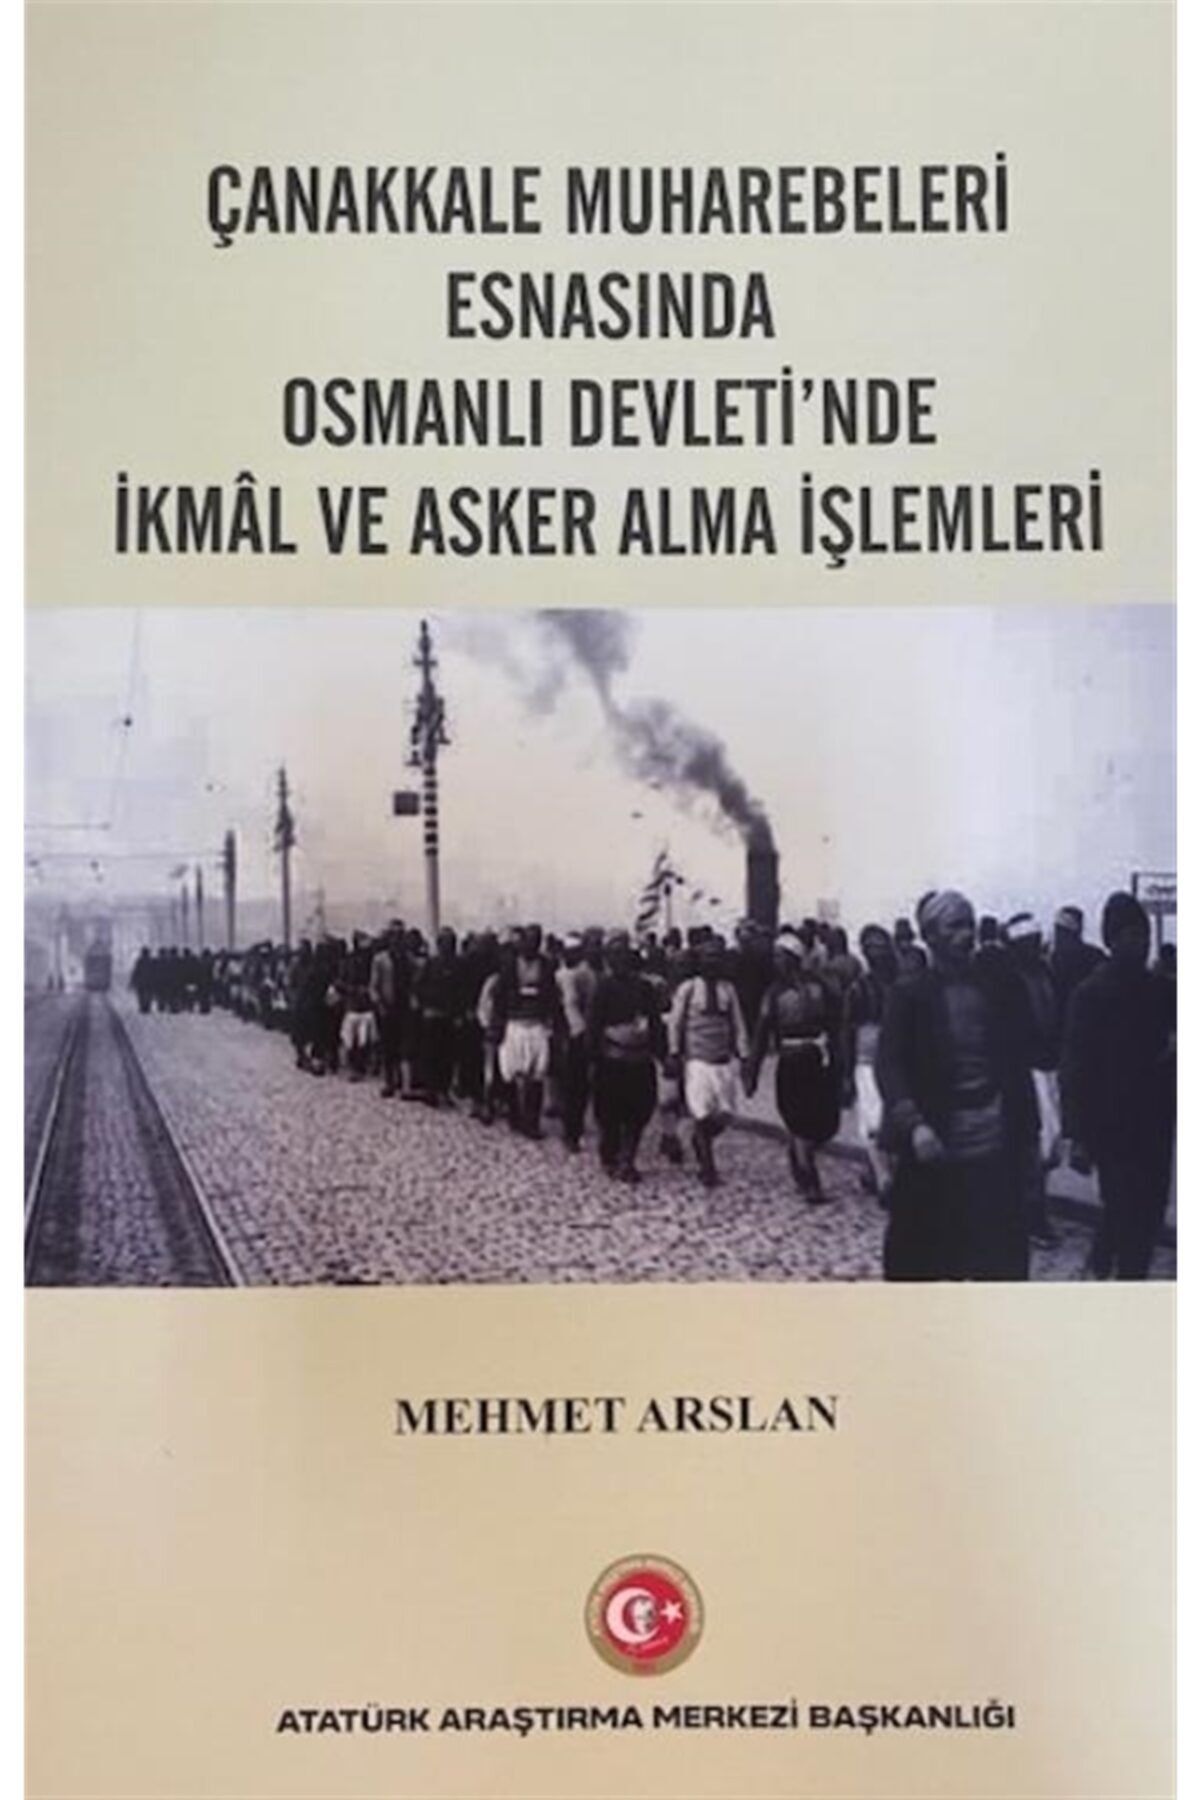 Atatürk Araştırma Merkezi Çanakkale Muharebeleri Esnasında Osmanlı Devlet'nde Ikmal Ve Asker Alma Işlemleri